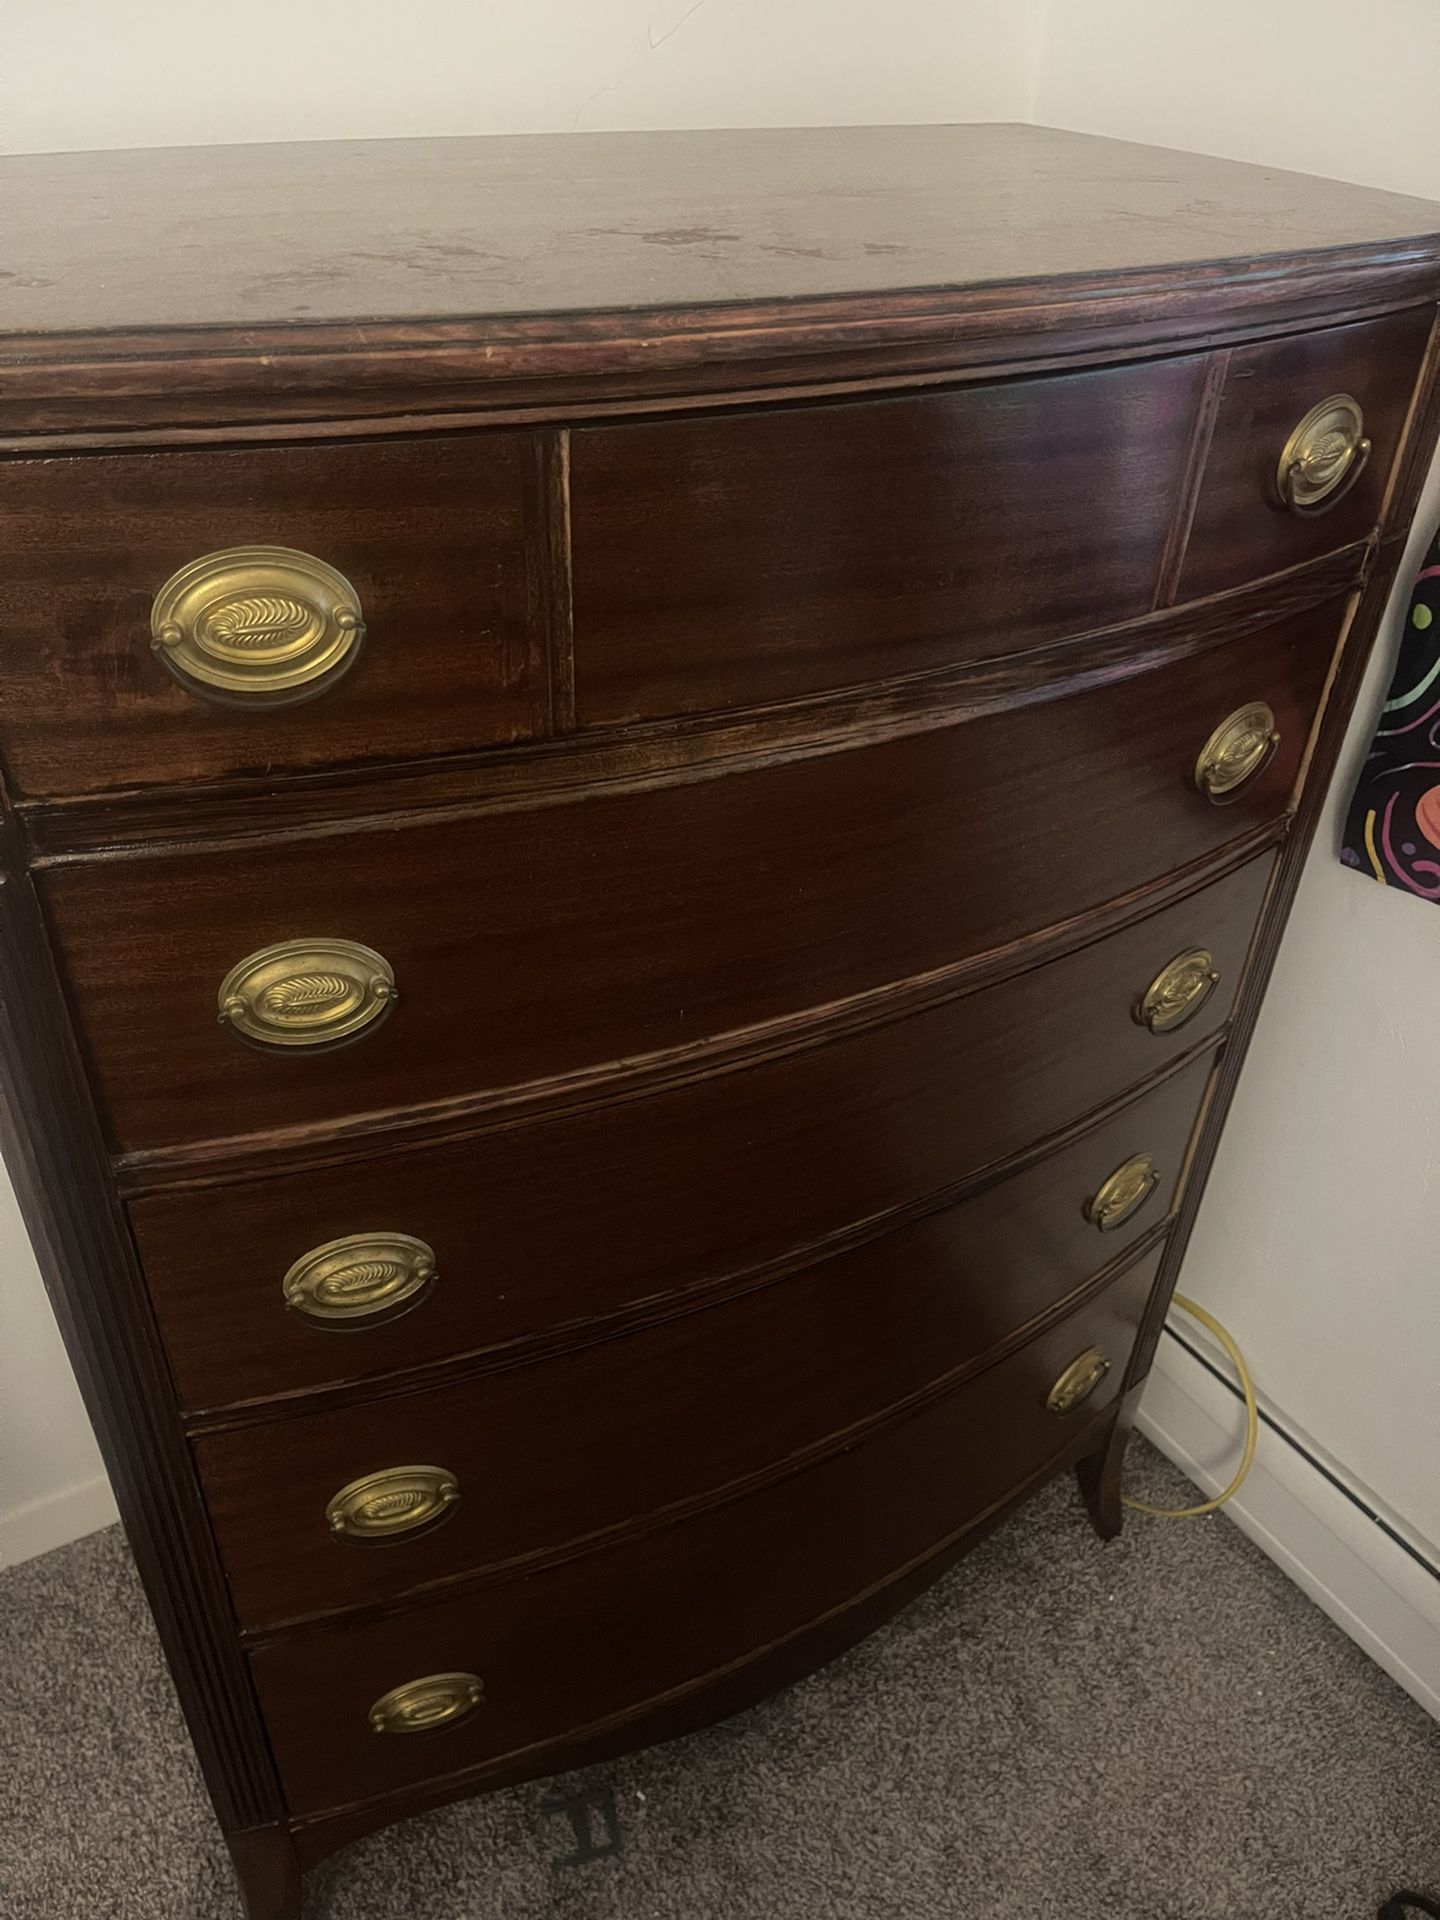 Refinished antique dresser